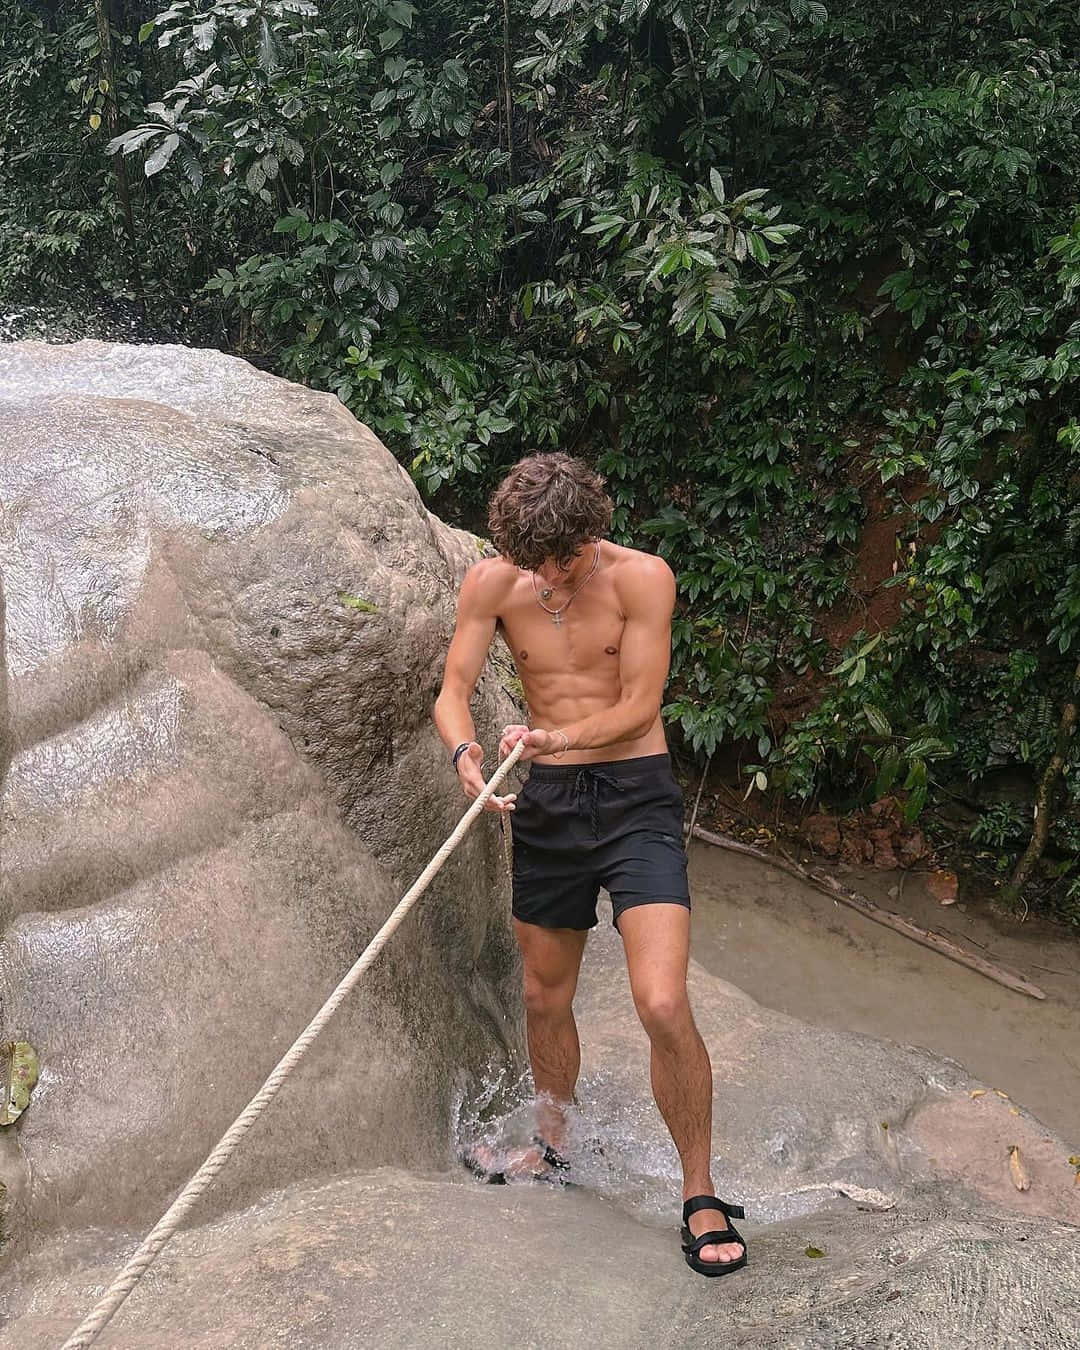 Shirtless Man Climbing Rock With Rope